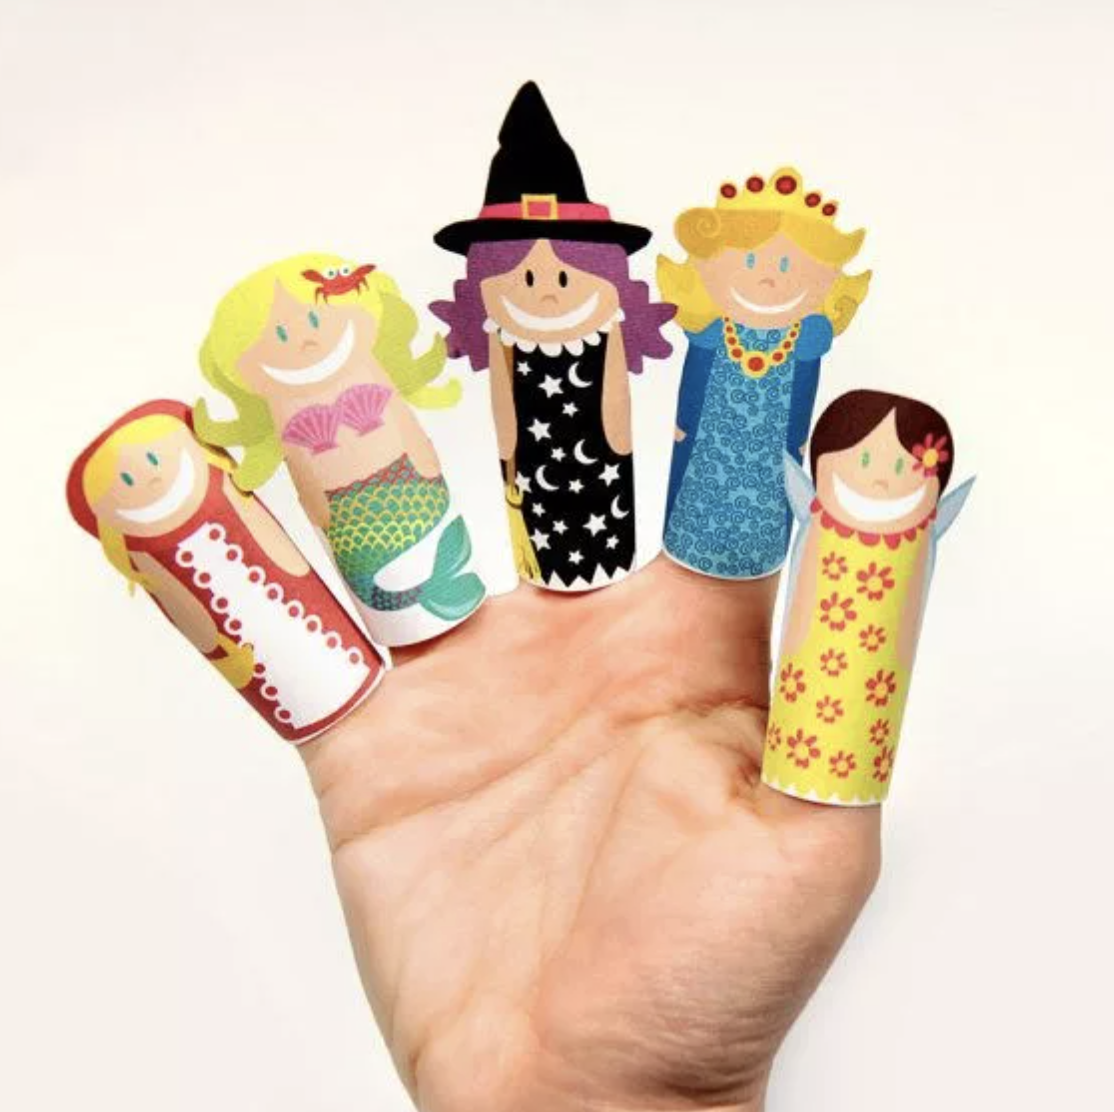 Пальчиковые куклы. Пальчиковые игрушки для детей. Игрушки на пальчики. Бумажные игрушки на пальцы. Пальчики из бумаги